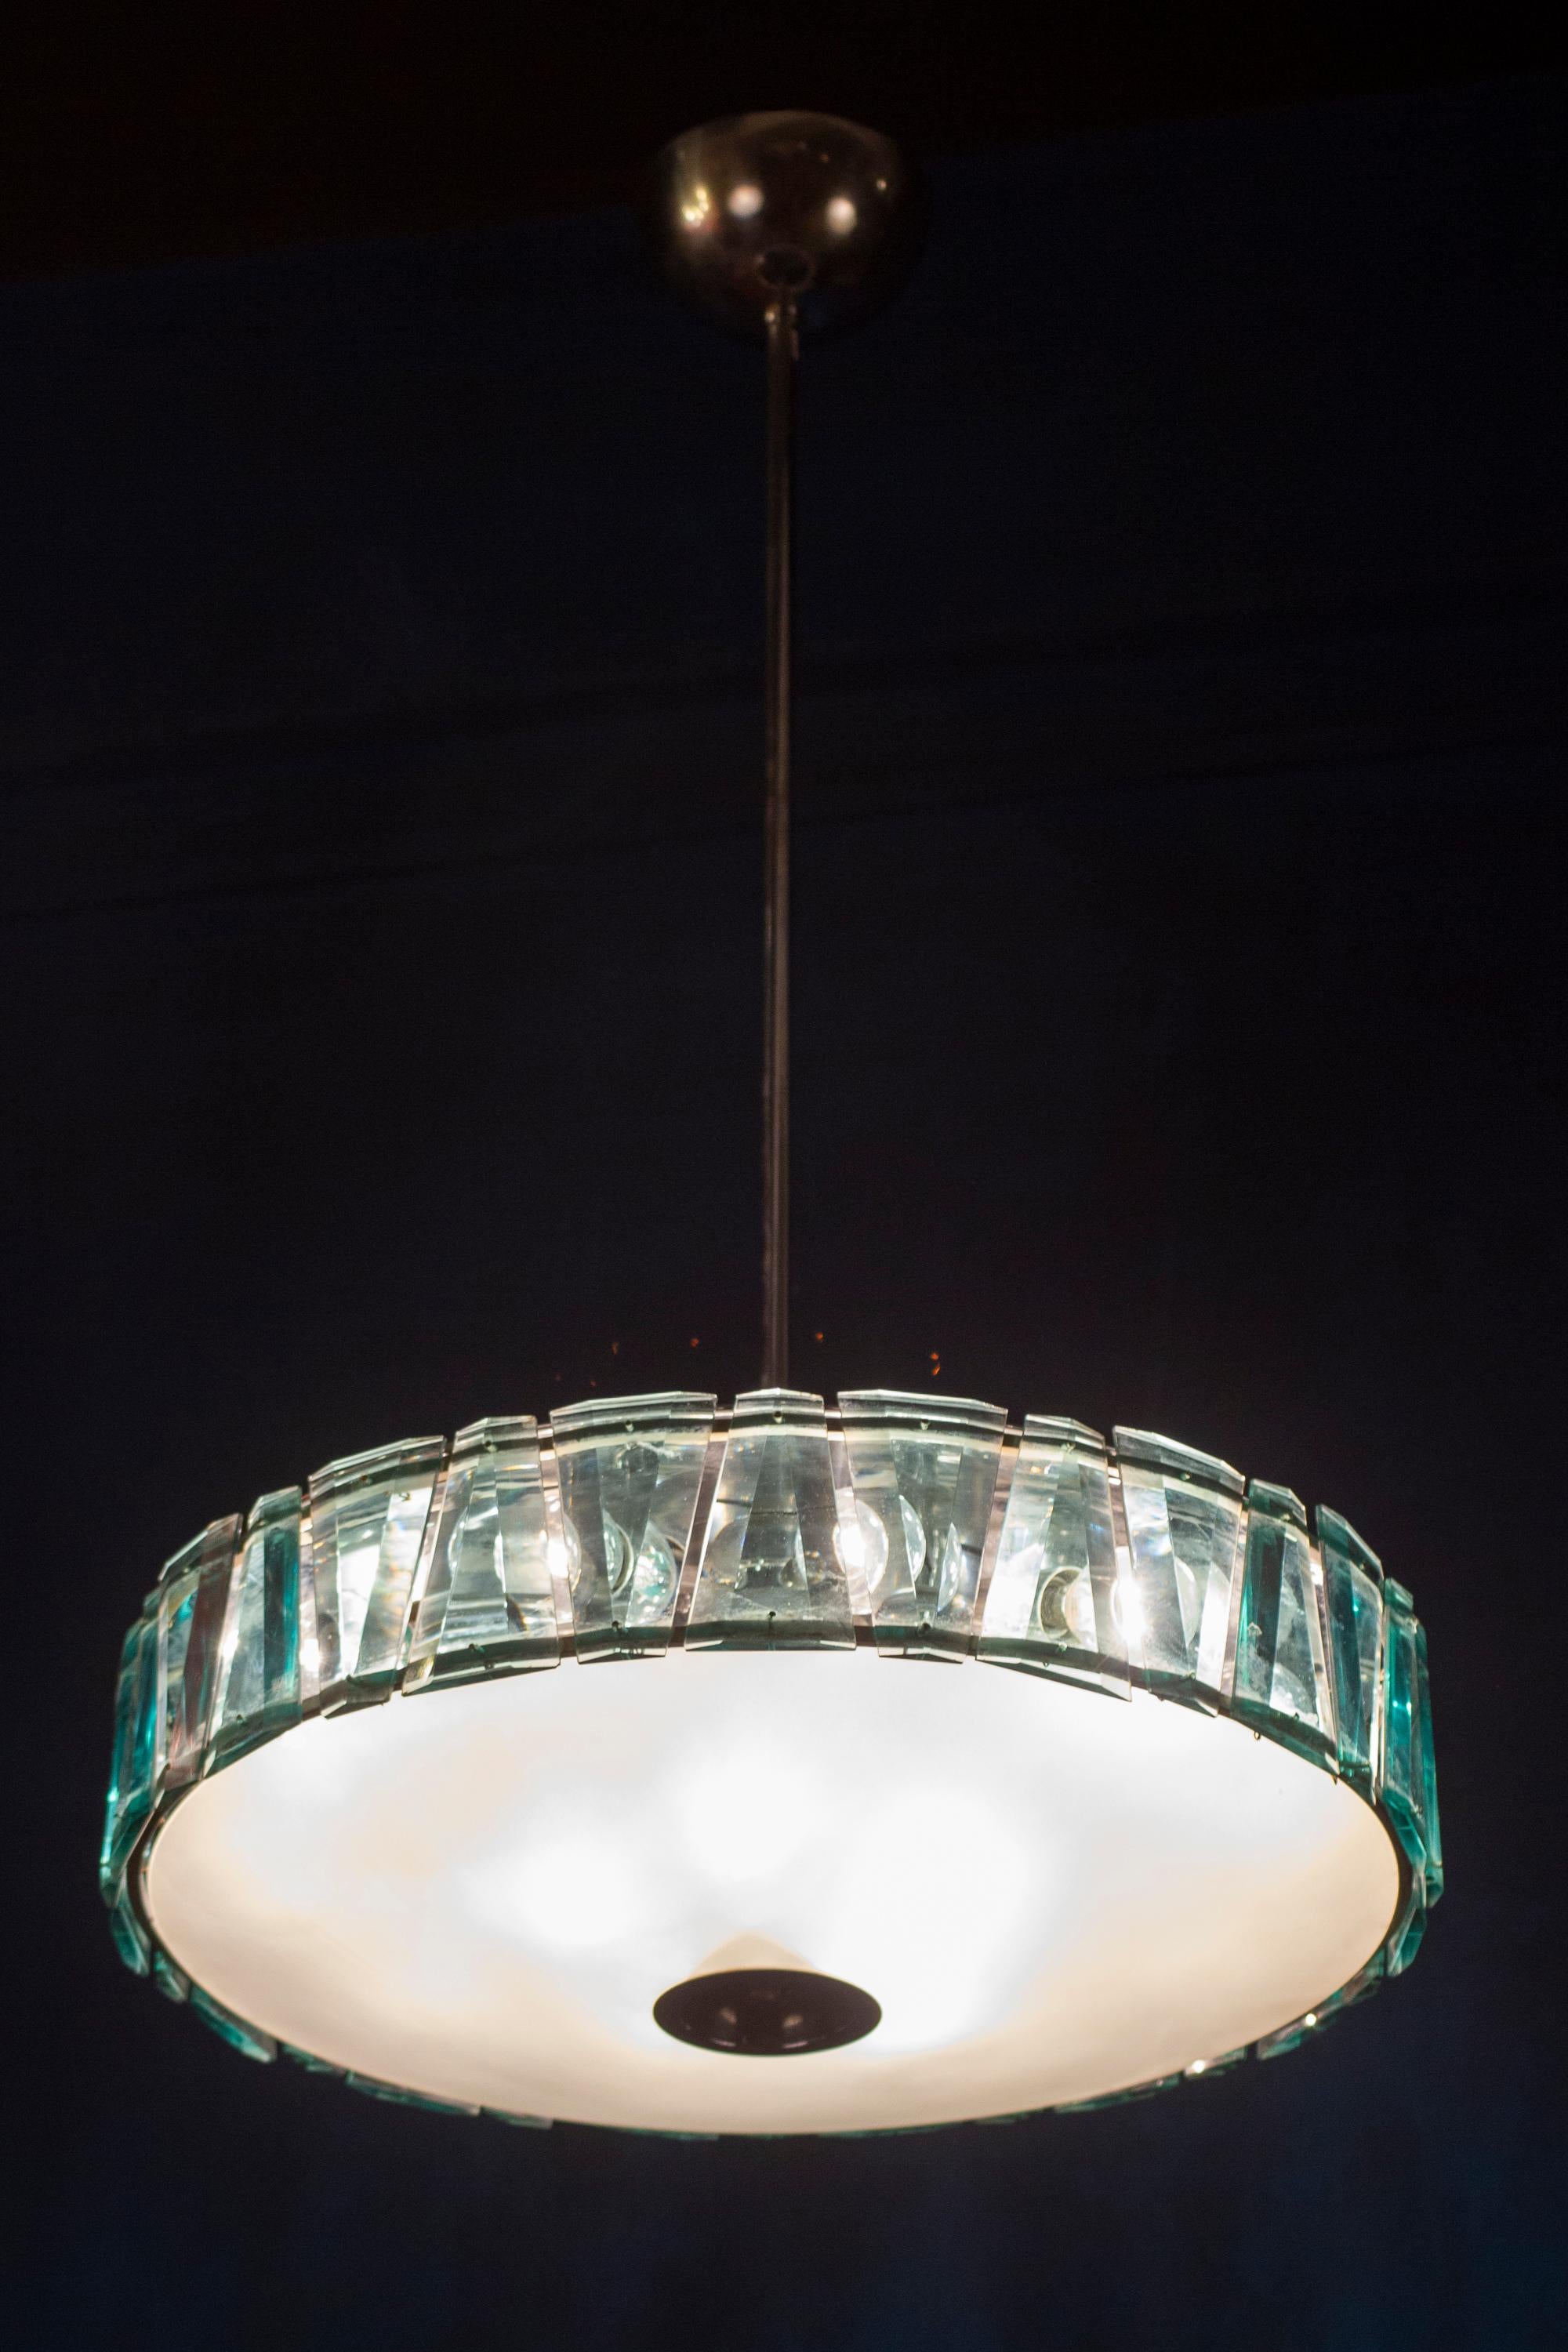 Auffallend minimalistische Stilnovo Pendelleuchte Modell 1273 , mit gefrostetem  Schale aus Opalglas, umgeben von geschliffenen grünen Kristallen, getragen von polierten Chrombeschlägen.
Die Brille ist in perfektem Zustand.
15 E 14 Glühbirnen. Wir